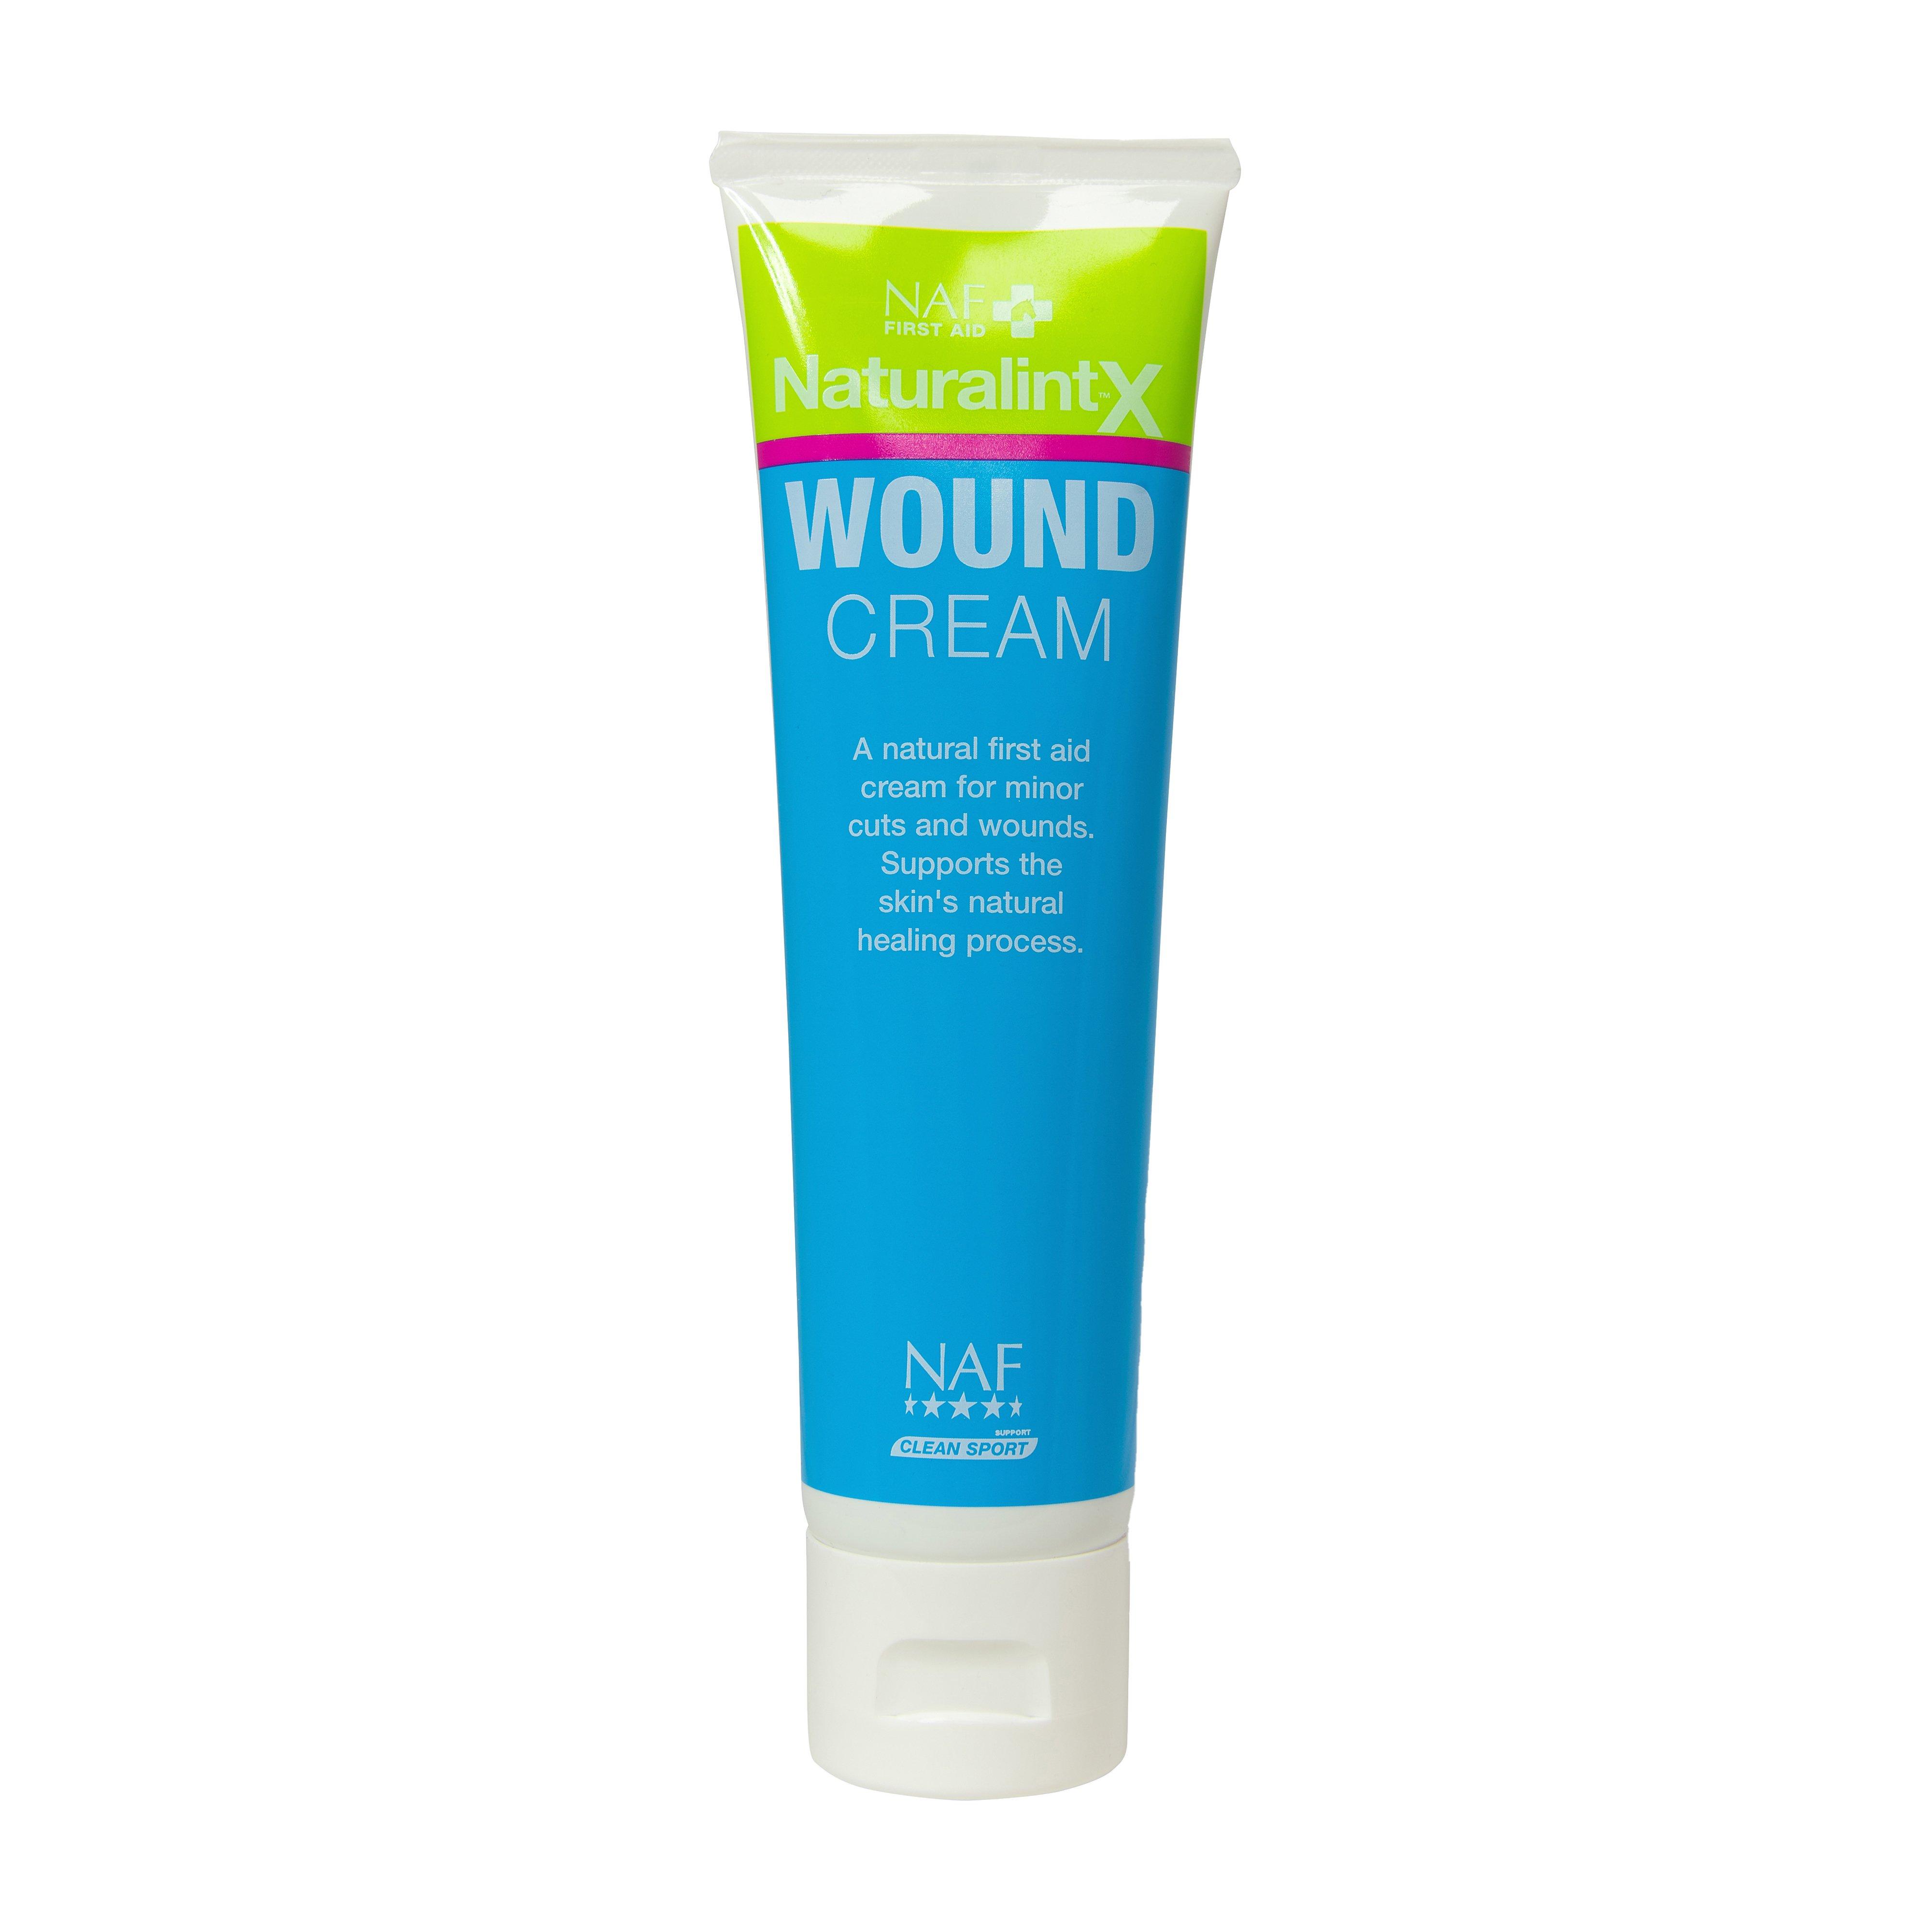 Wound Cream